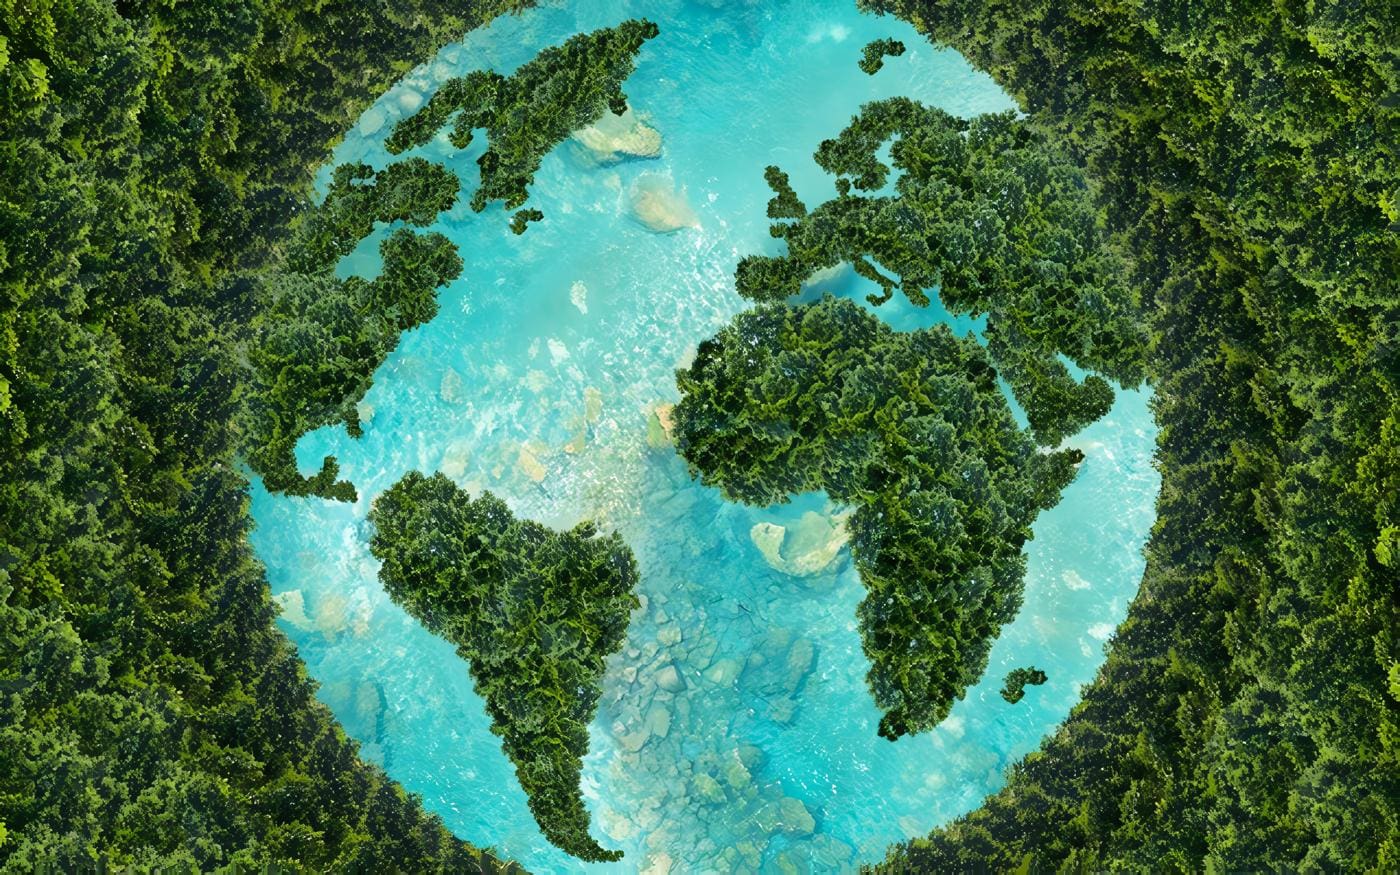 Normas y leyes medio ambiente en el mundo